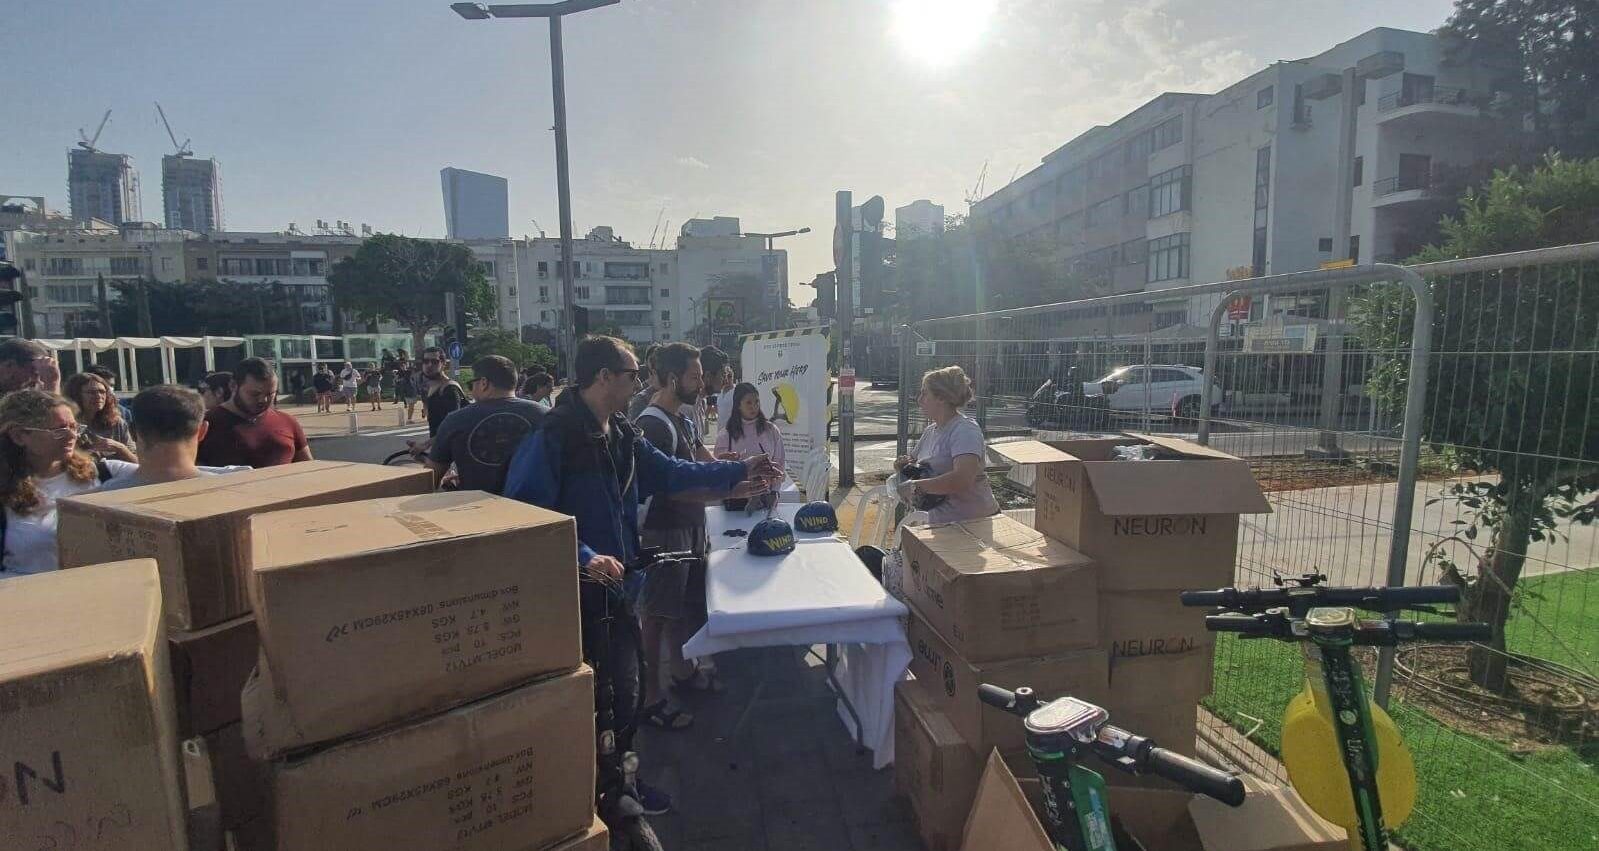 נקודת חלוקת קסדות בחינם בתל אביב הבוקר. צילום: עמותת מפתח לב הזהב